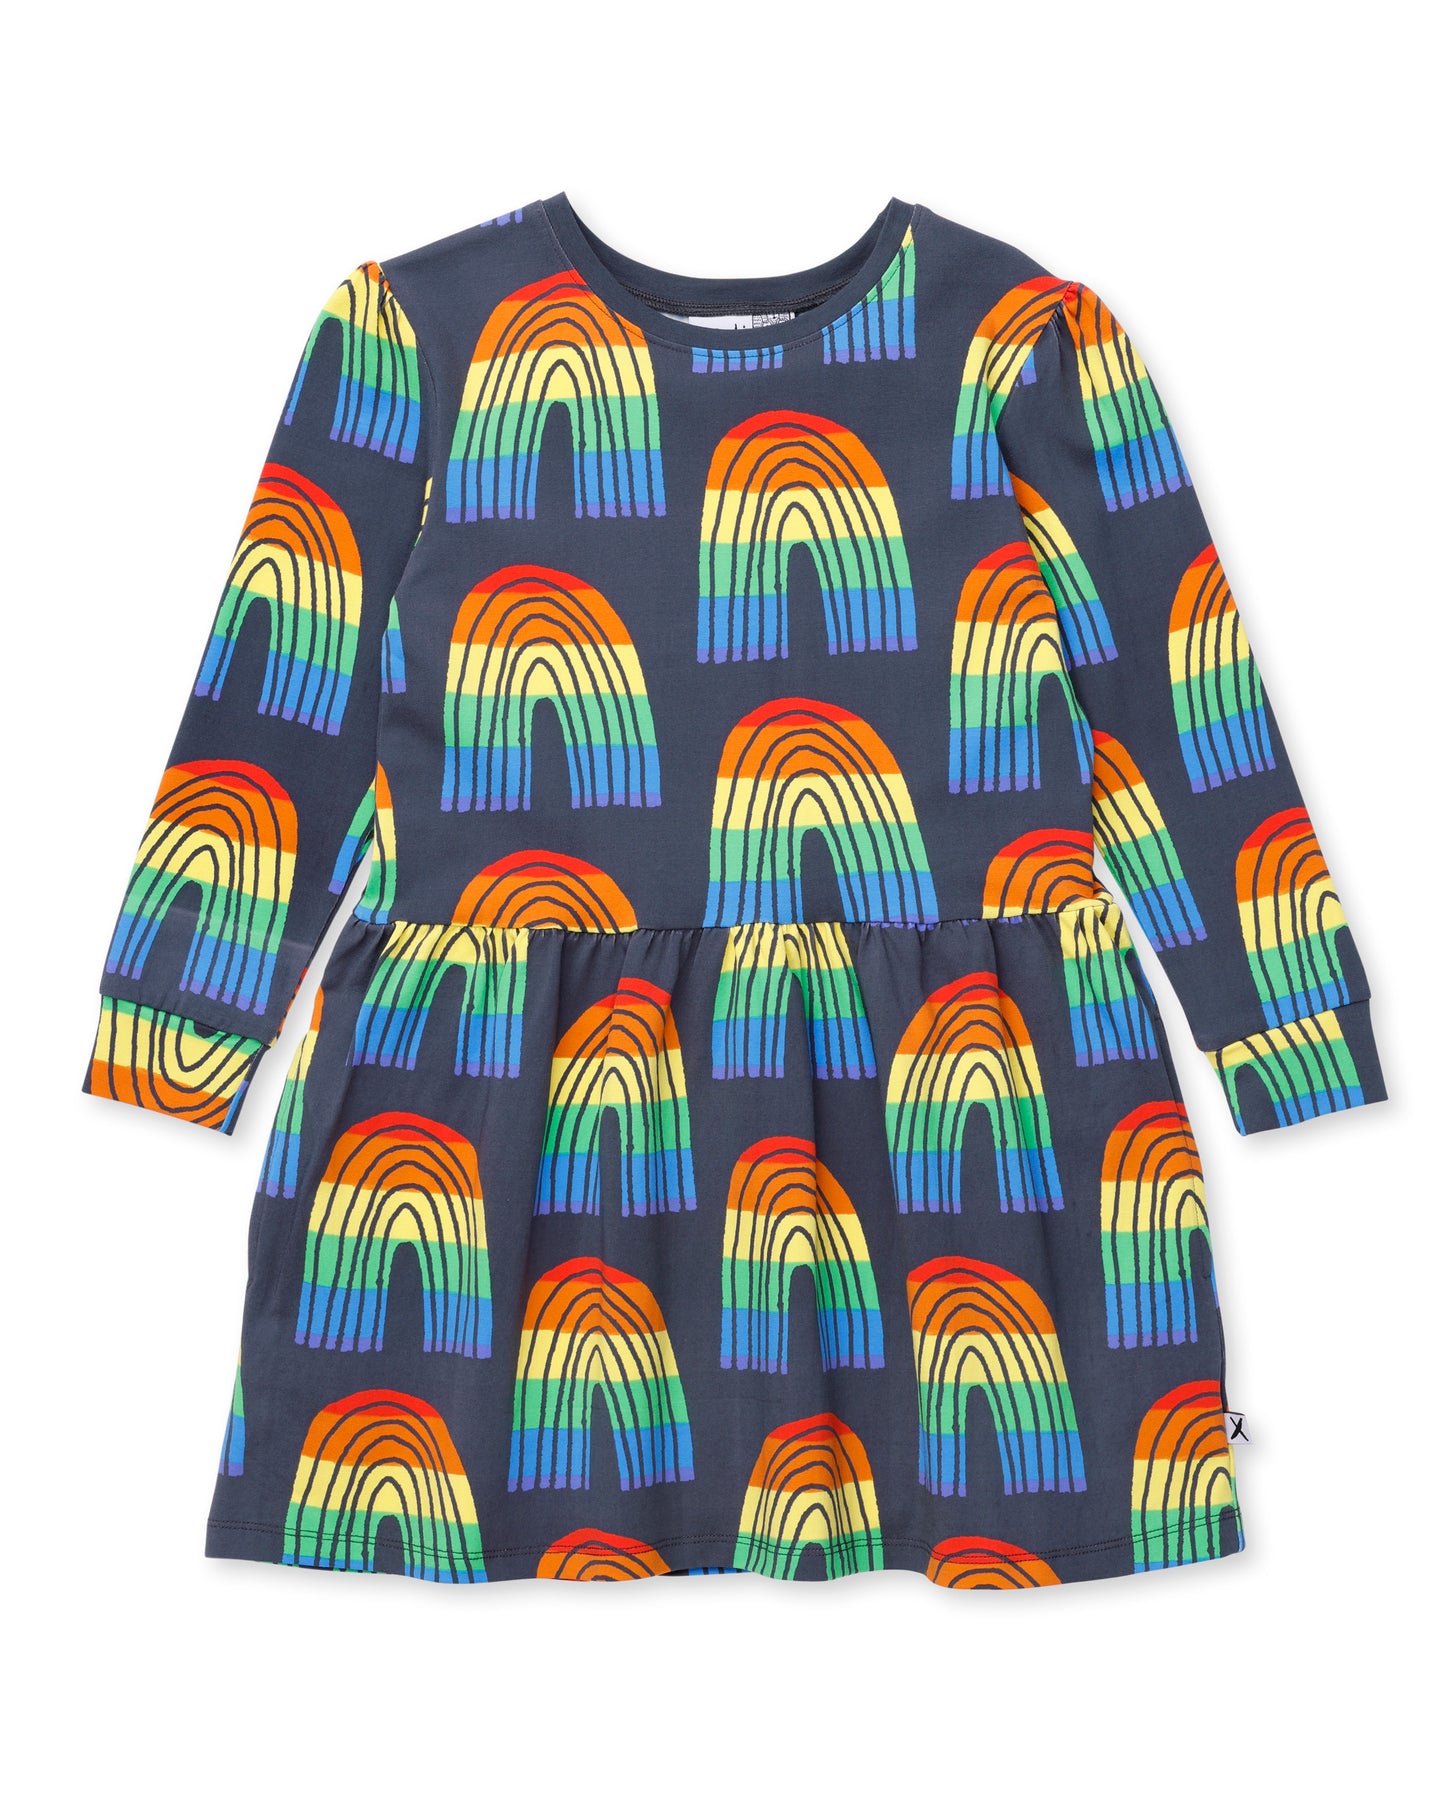 Stripey Rainbow Dress